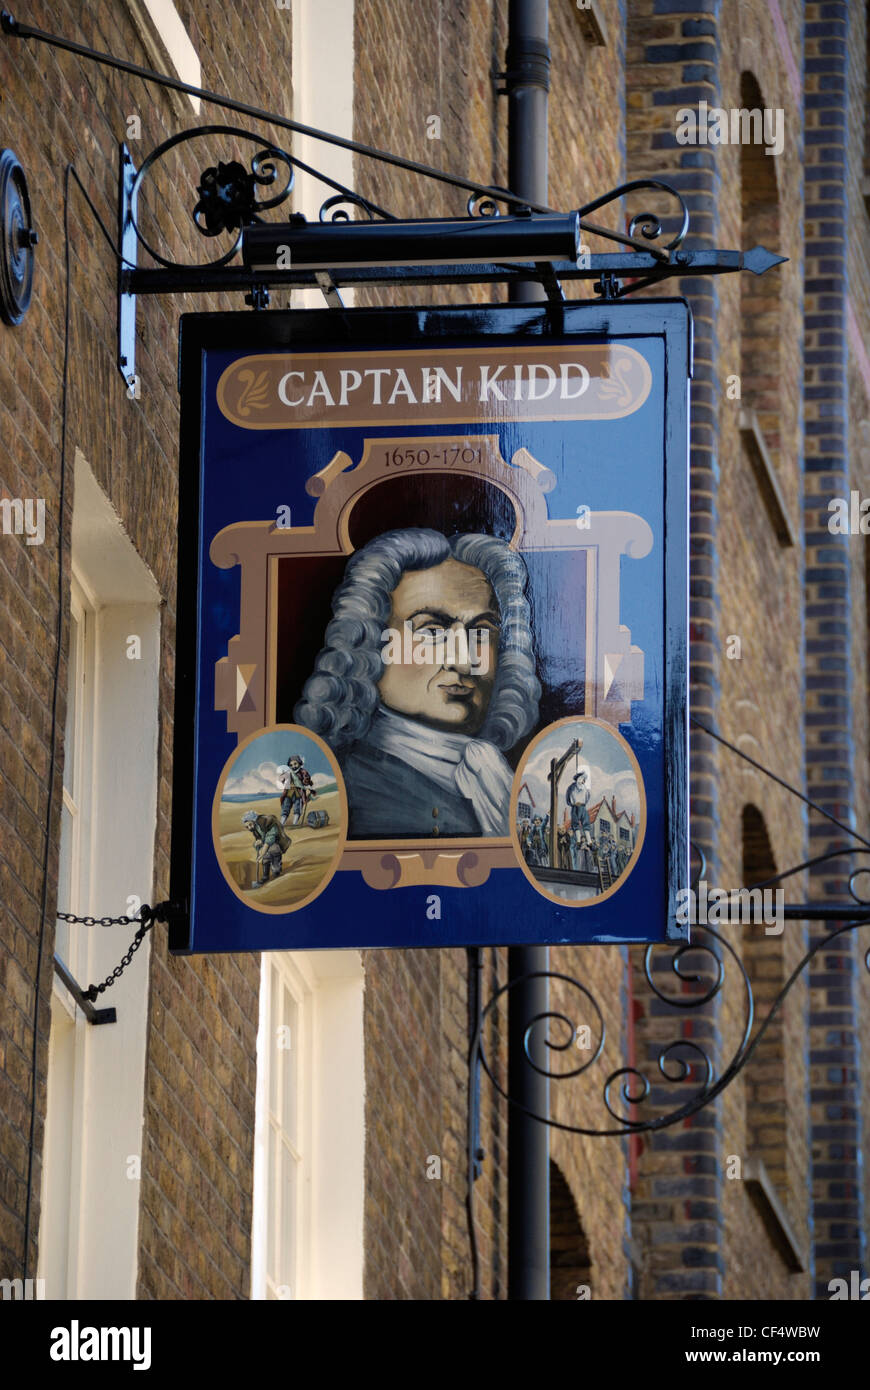 Ein Pub-Zeichen von The Captain Kidd Gastwirtschaft in Wapping Hautpstraße projizieren. Stockfoto